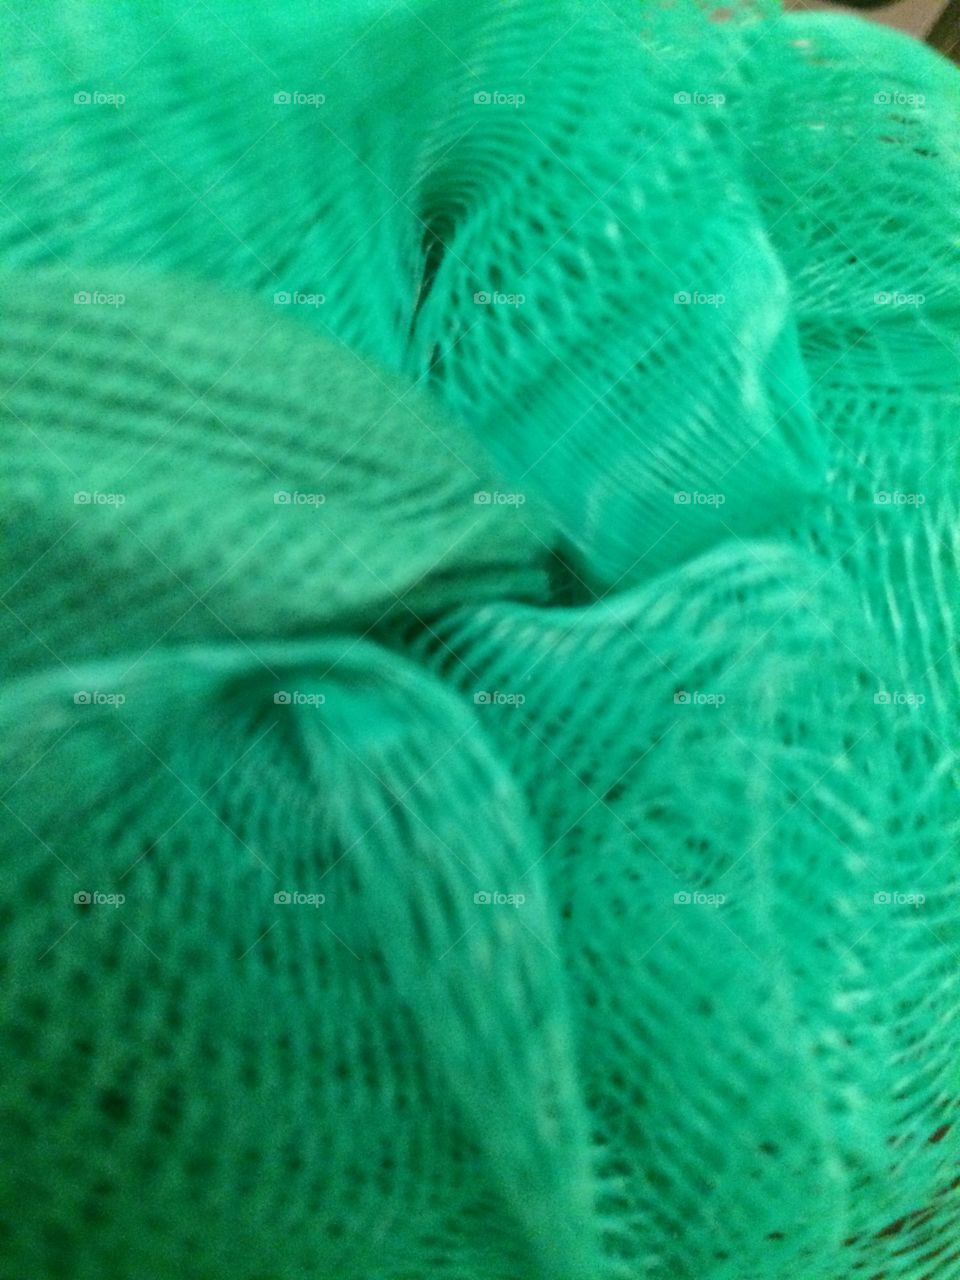 Fluffed green